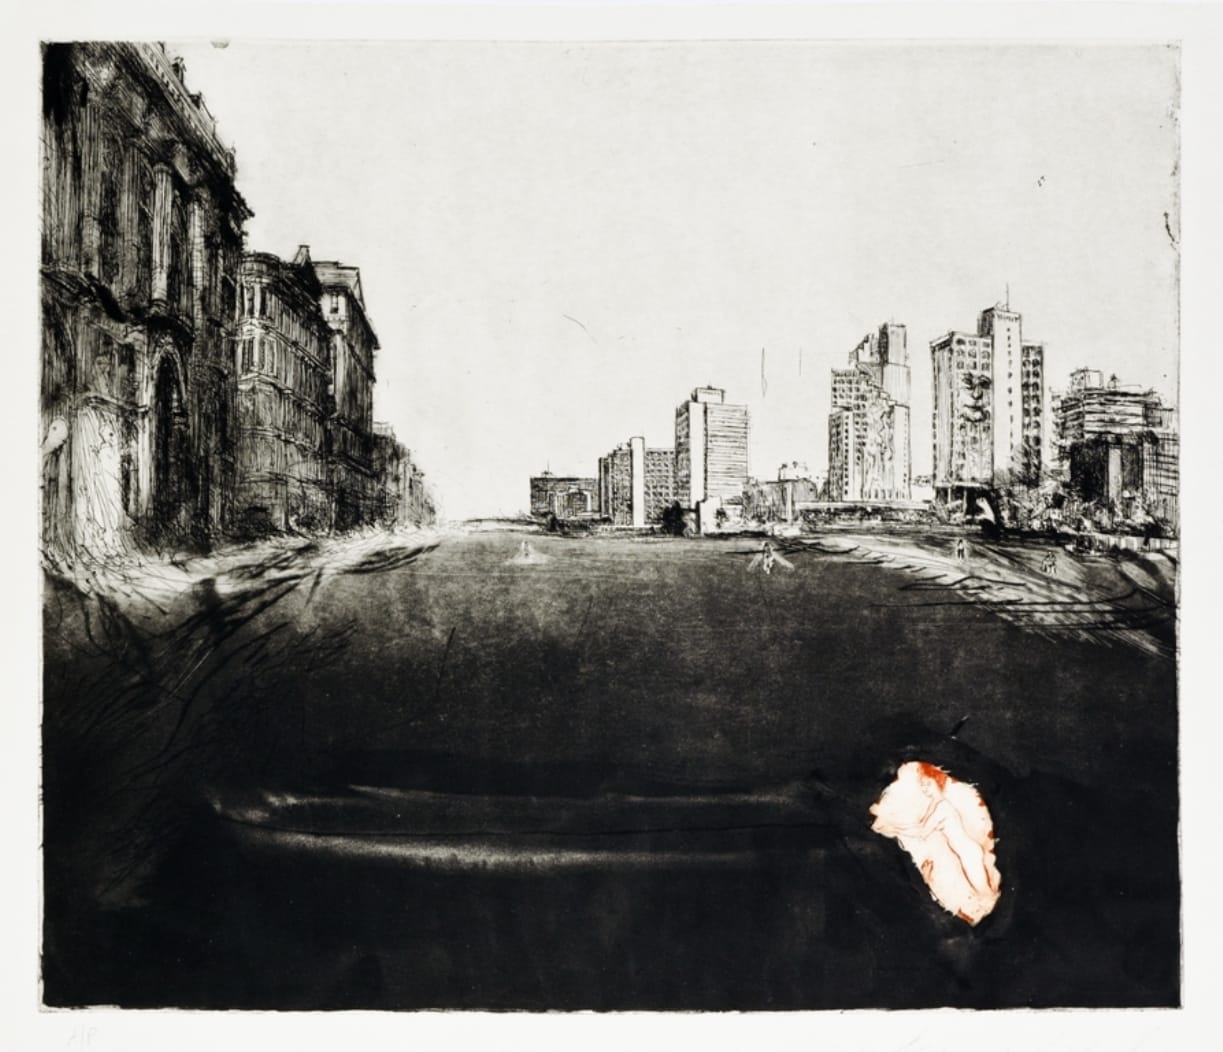 איוון שוובל, "תל-אביב–ניו-יורק", 1994, בתערוכה "דרגות של חושך: הדפס עכשווי בעקבות פרנסיסקו גויה", מוזיאון הרמן שטרוק